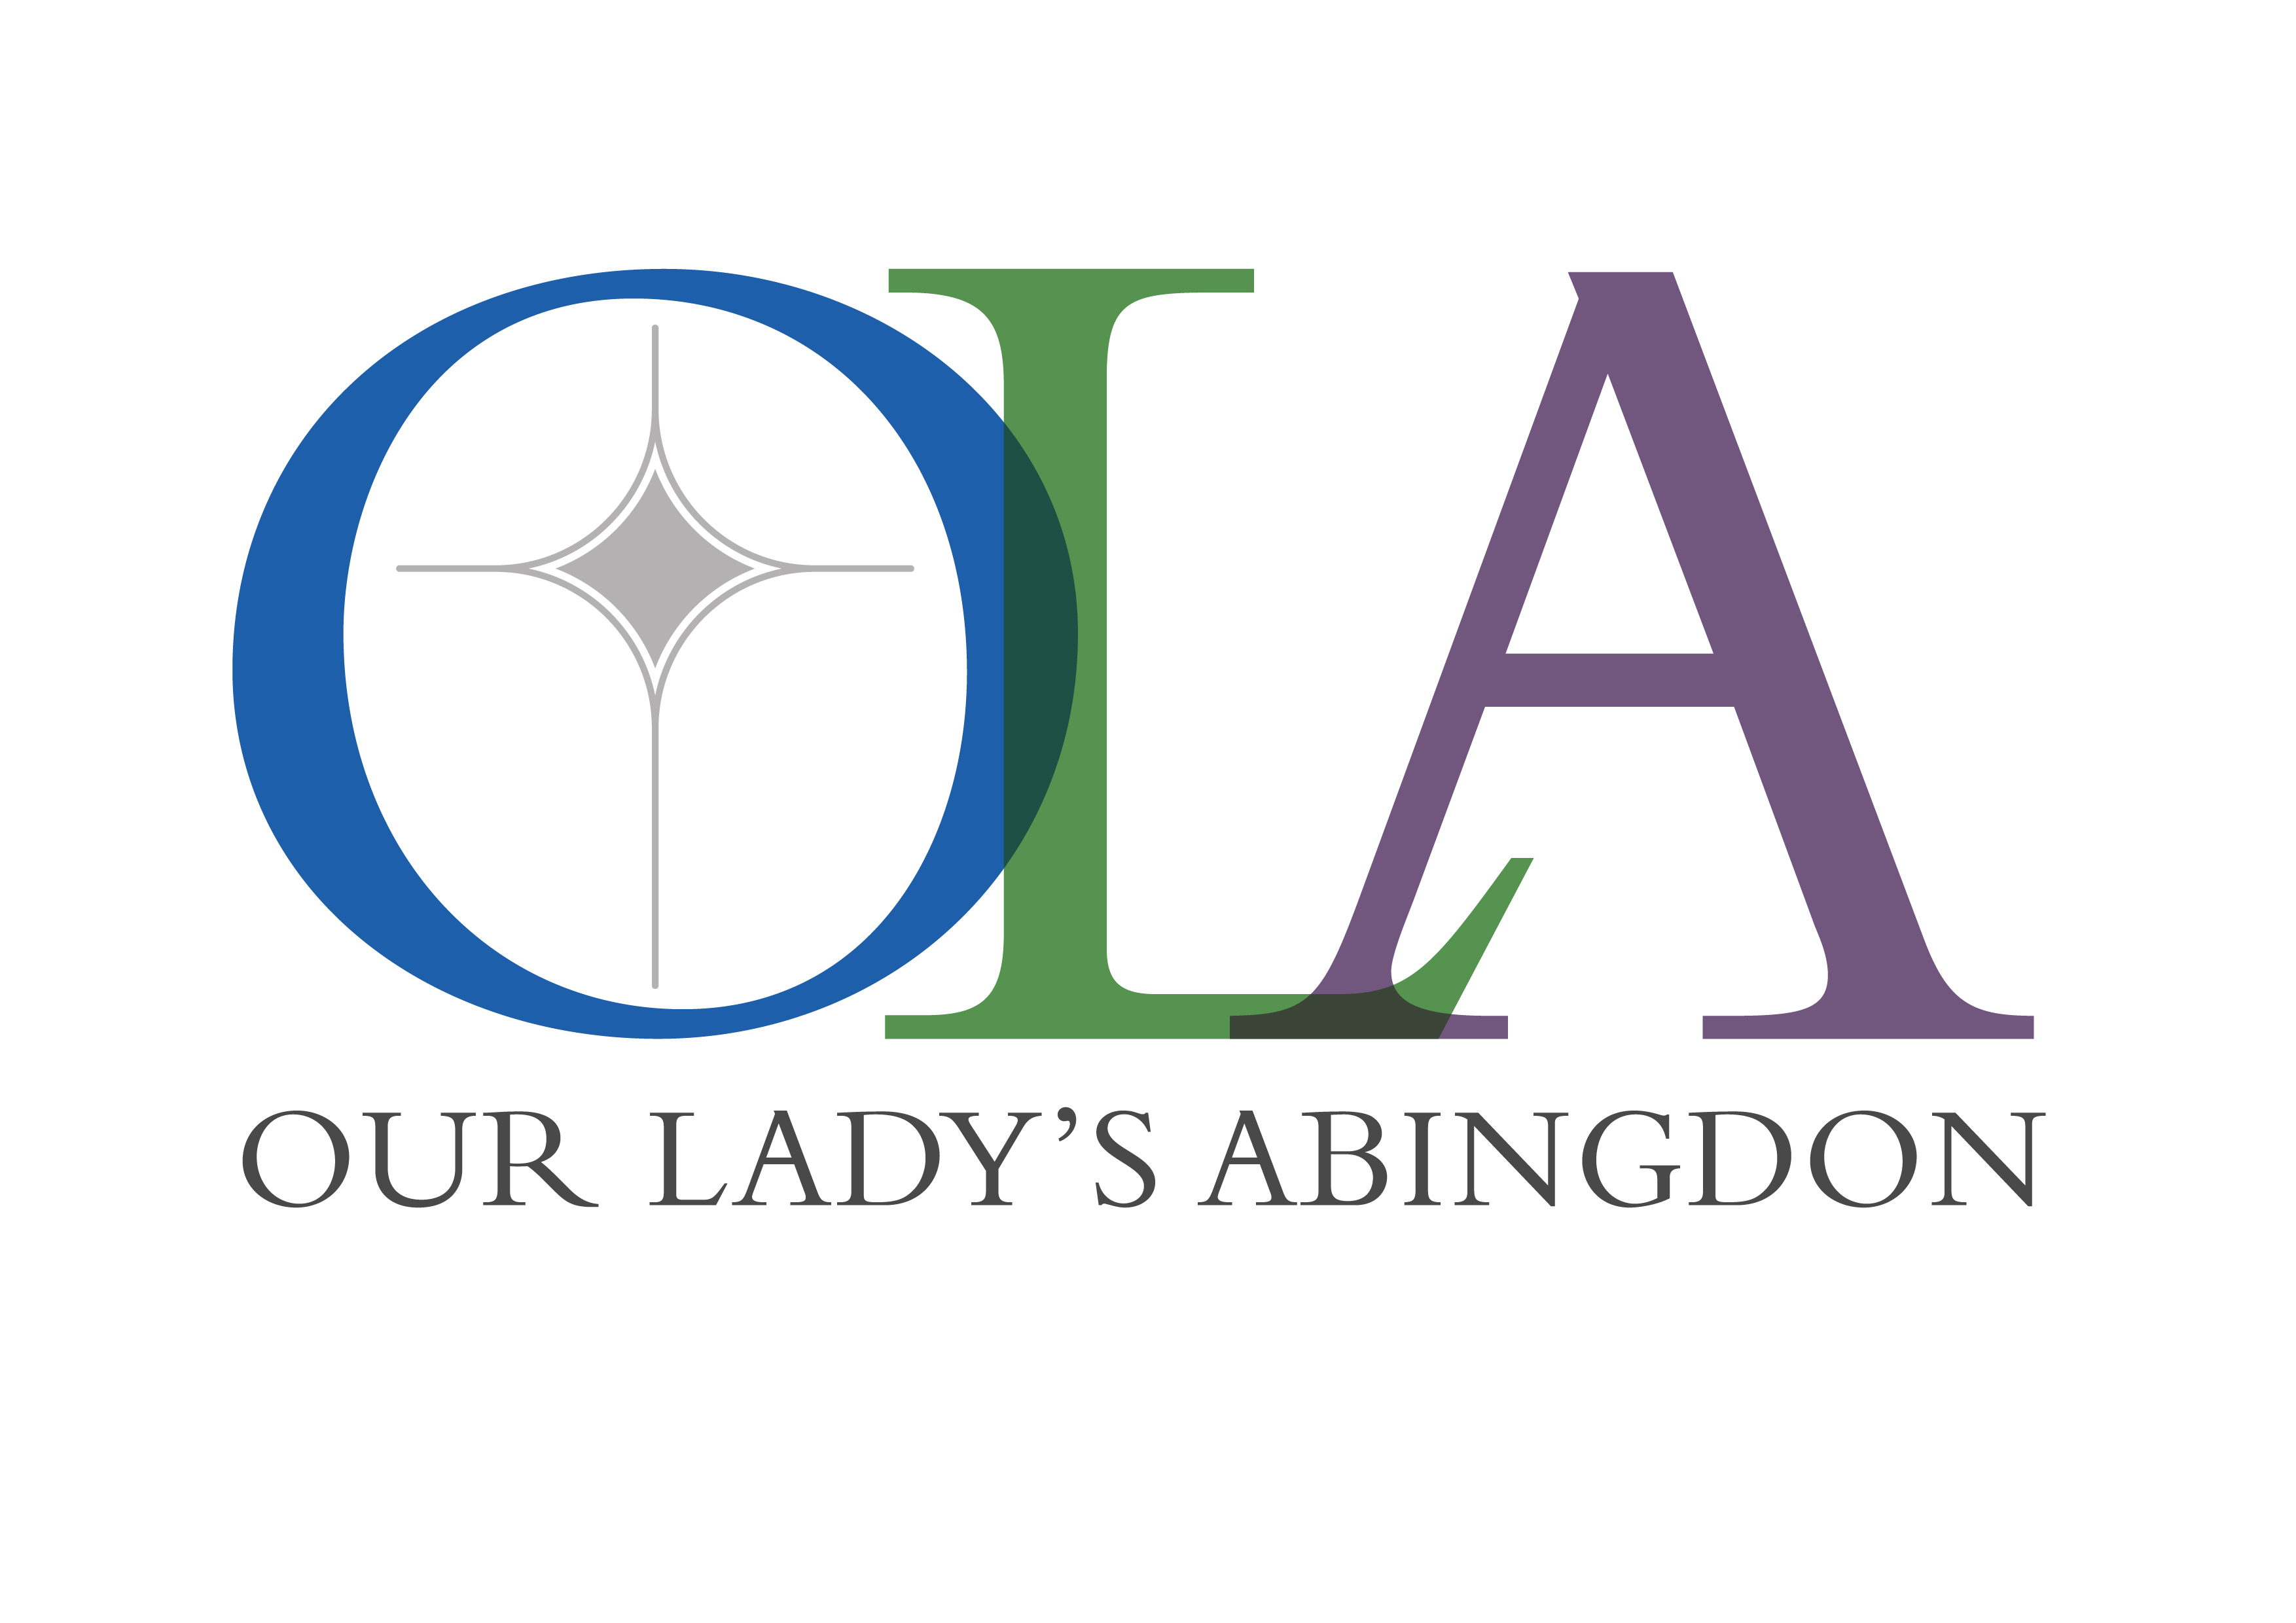 Our Lady's Abingdon emblem